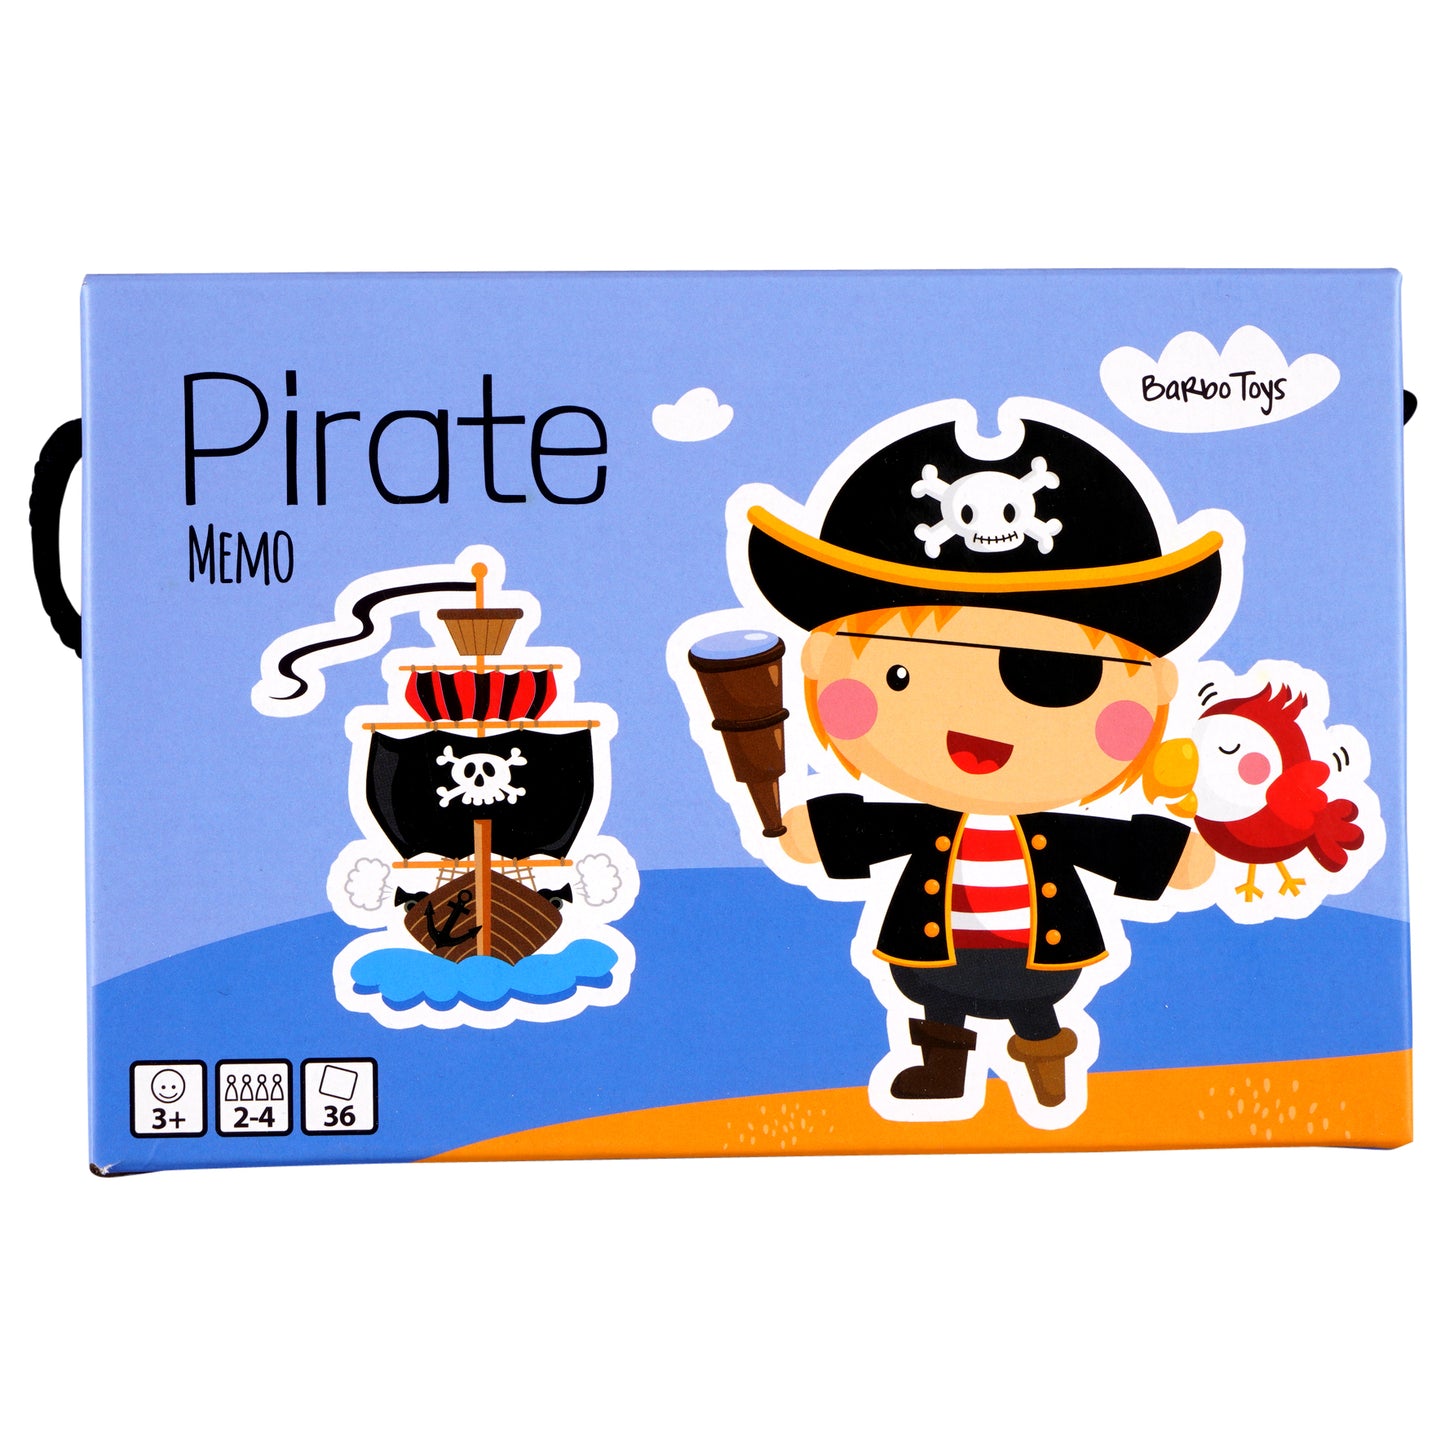 Pirate Memo Game